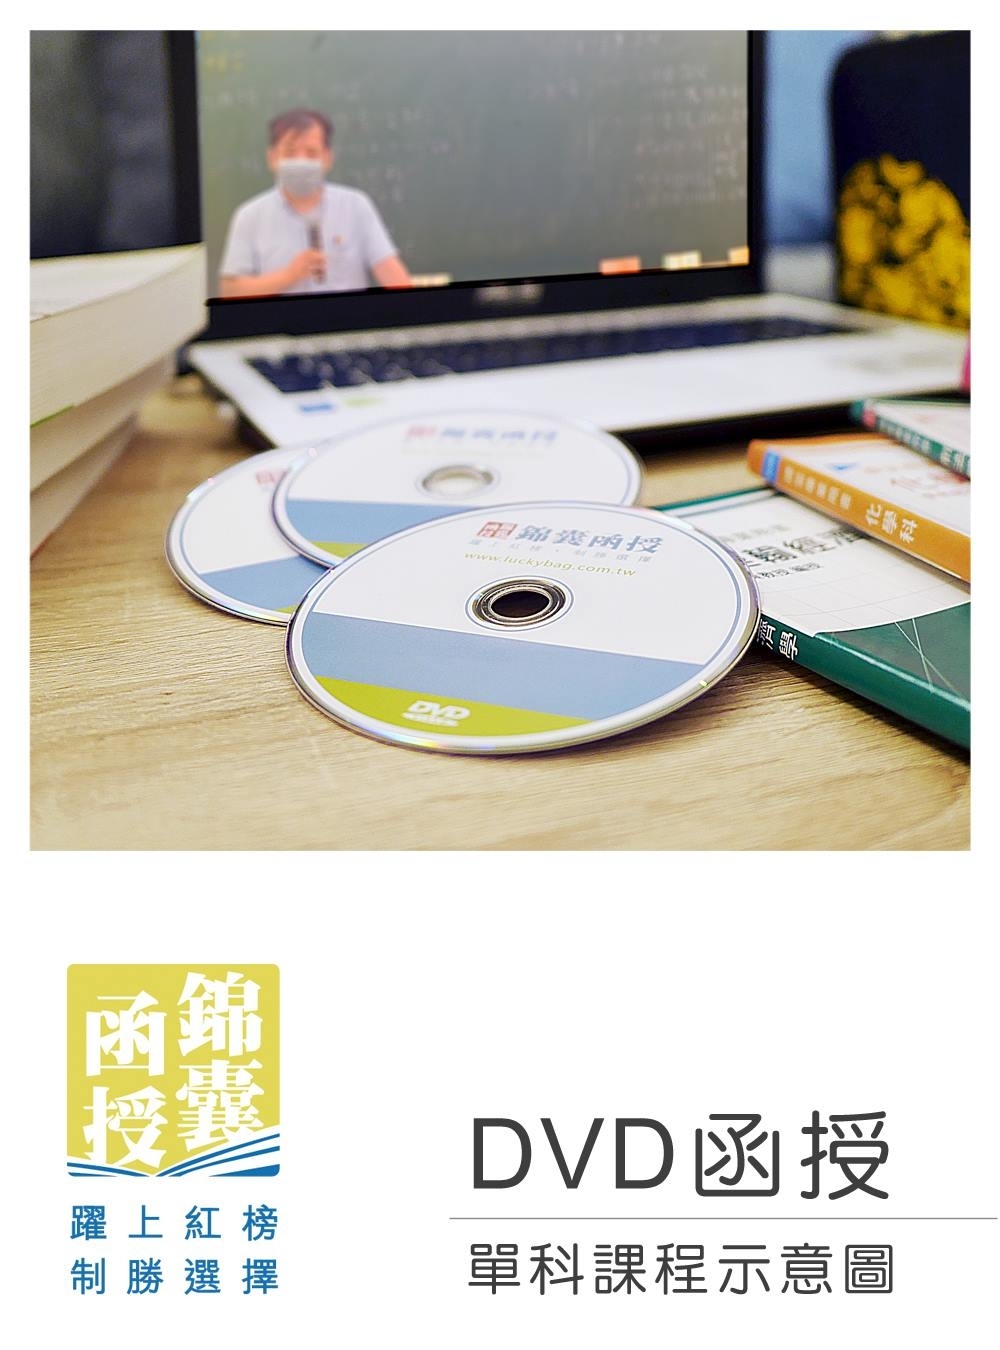 【DVD函授】犯罪學-單科課程...